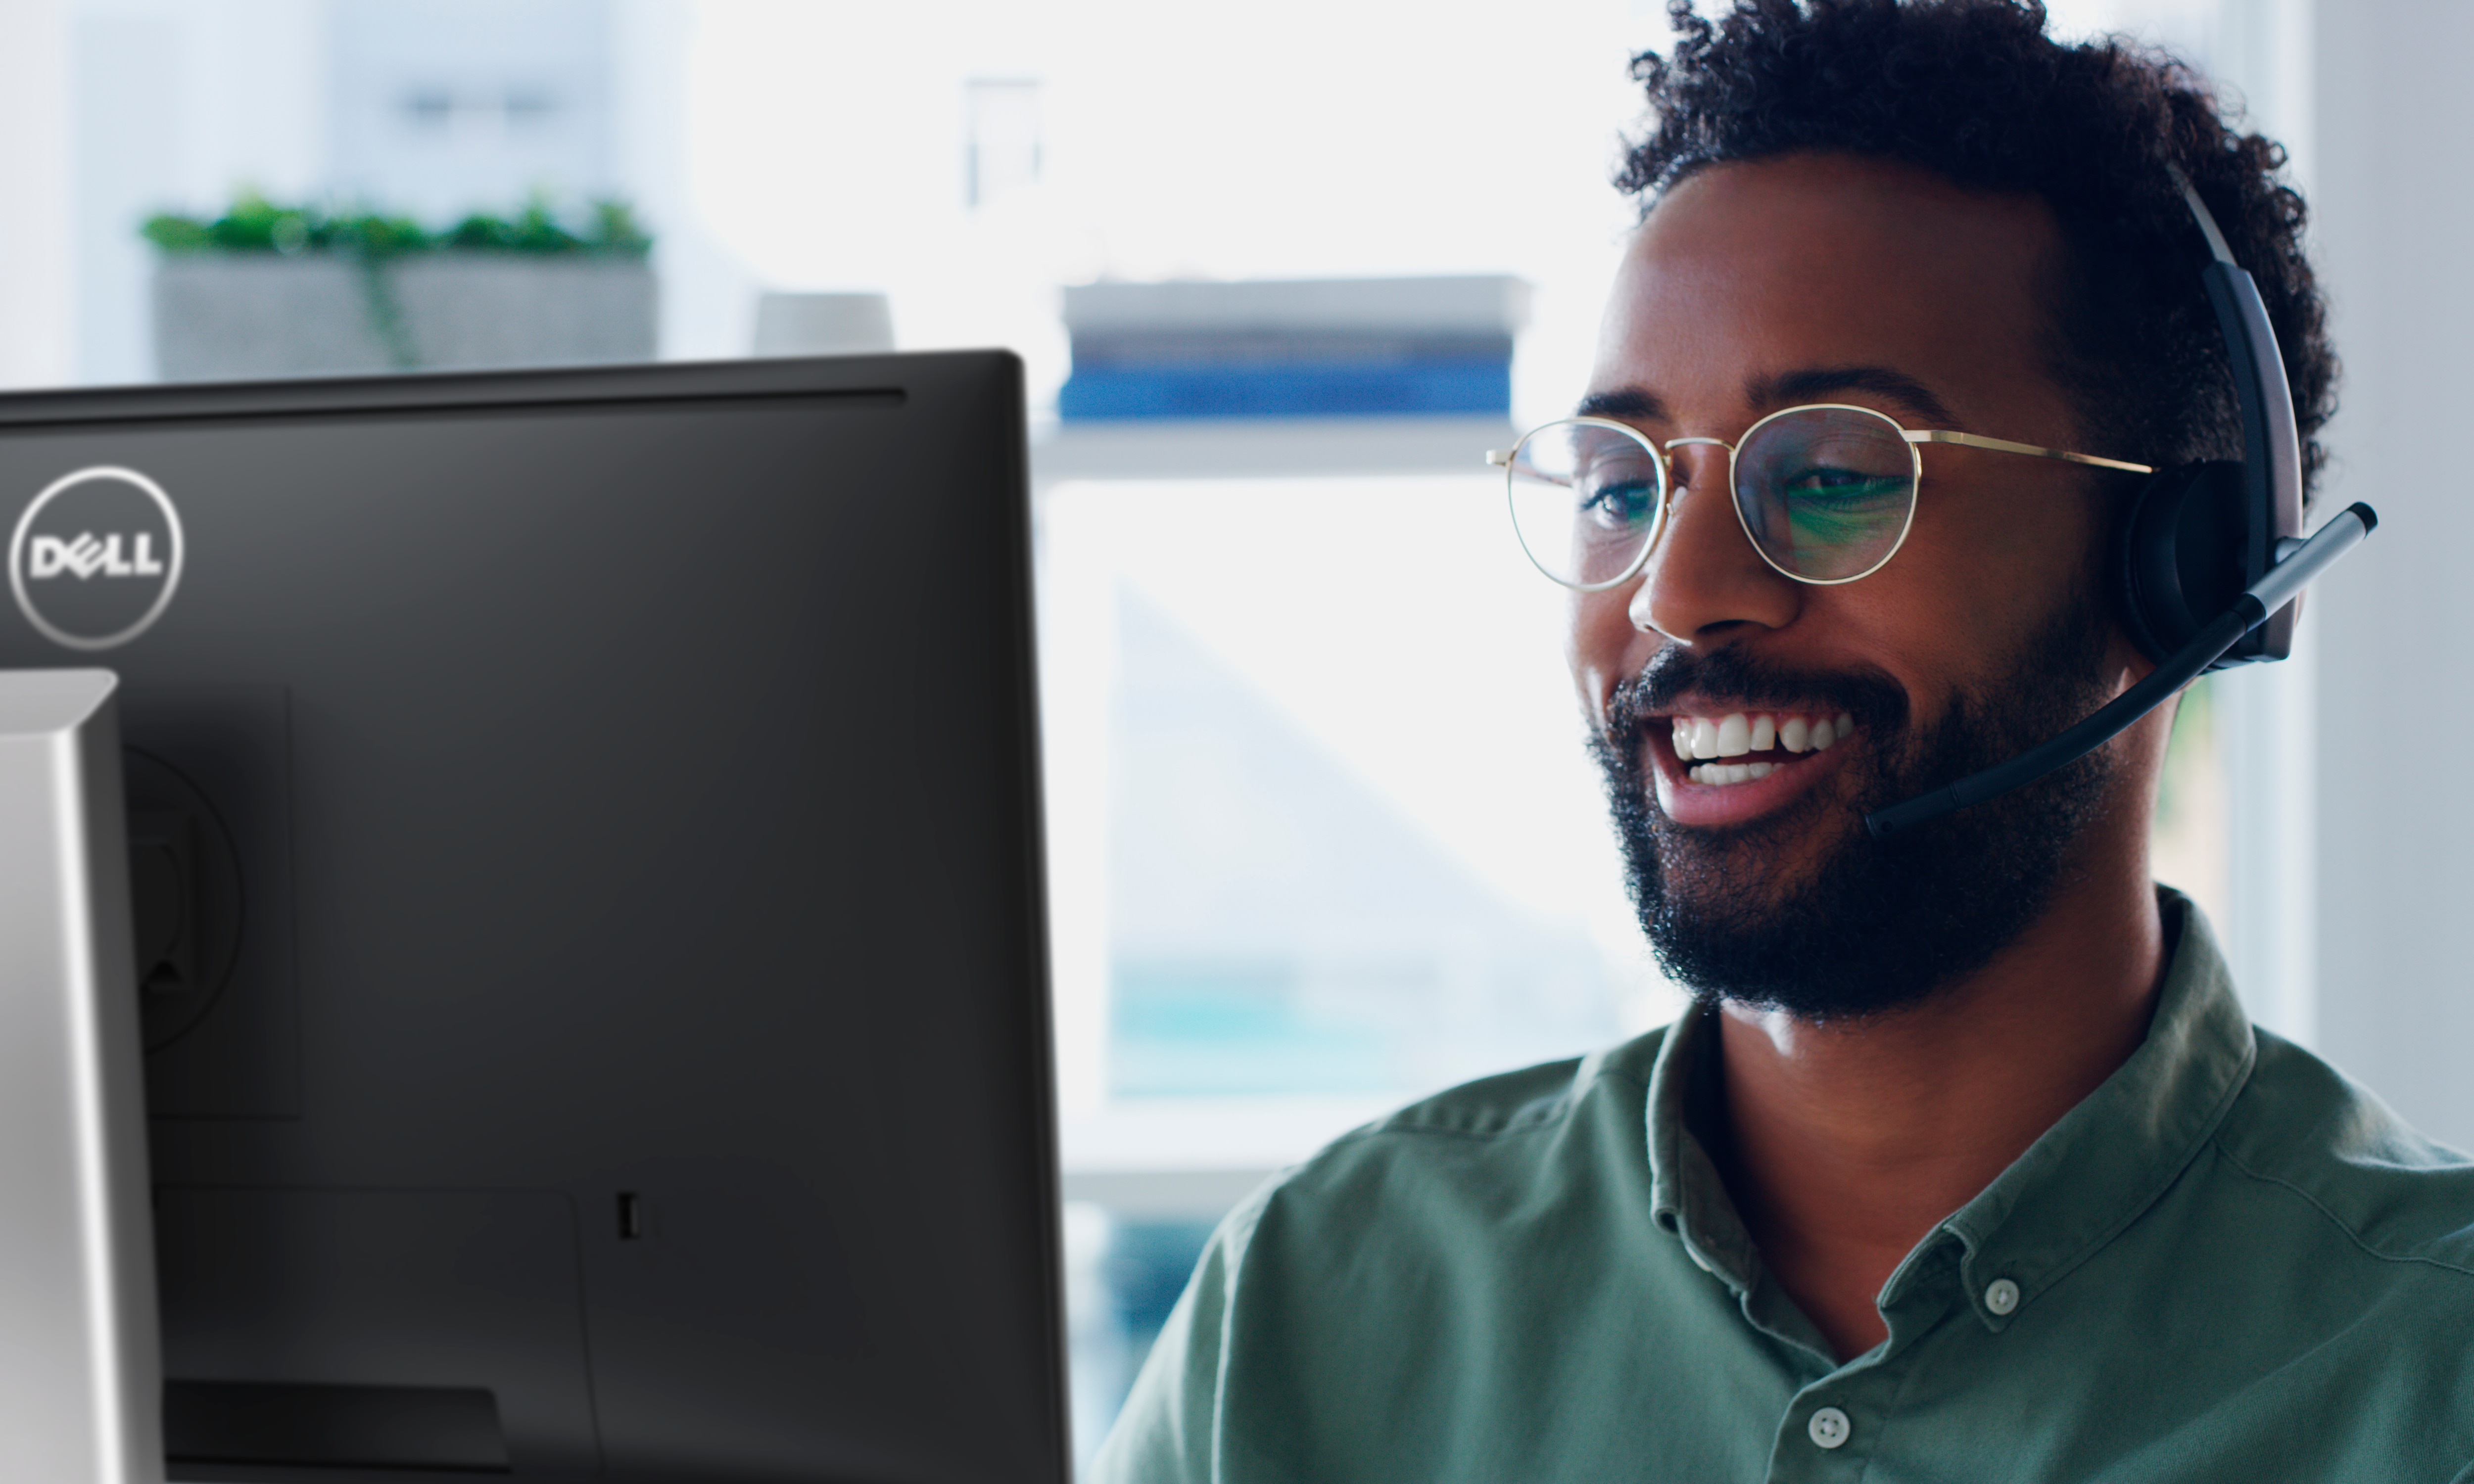 Lachende man met een bril en een headset op zijn hoofd die gebruik maakt van een Dell monitor.